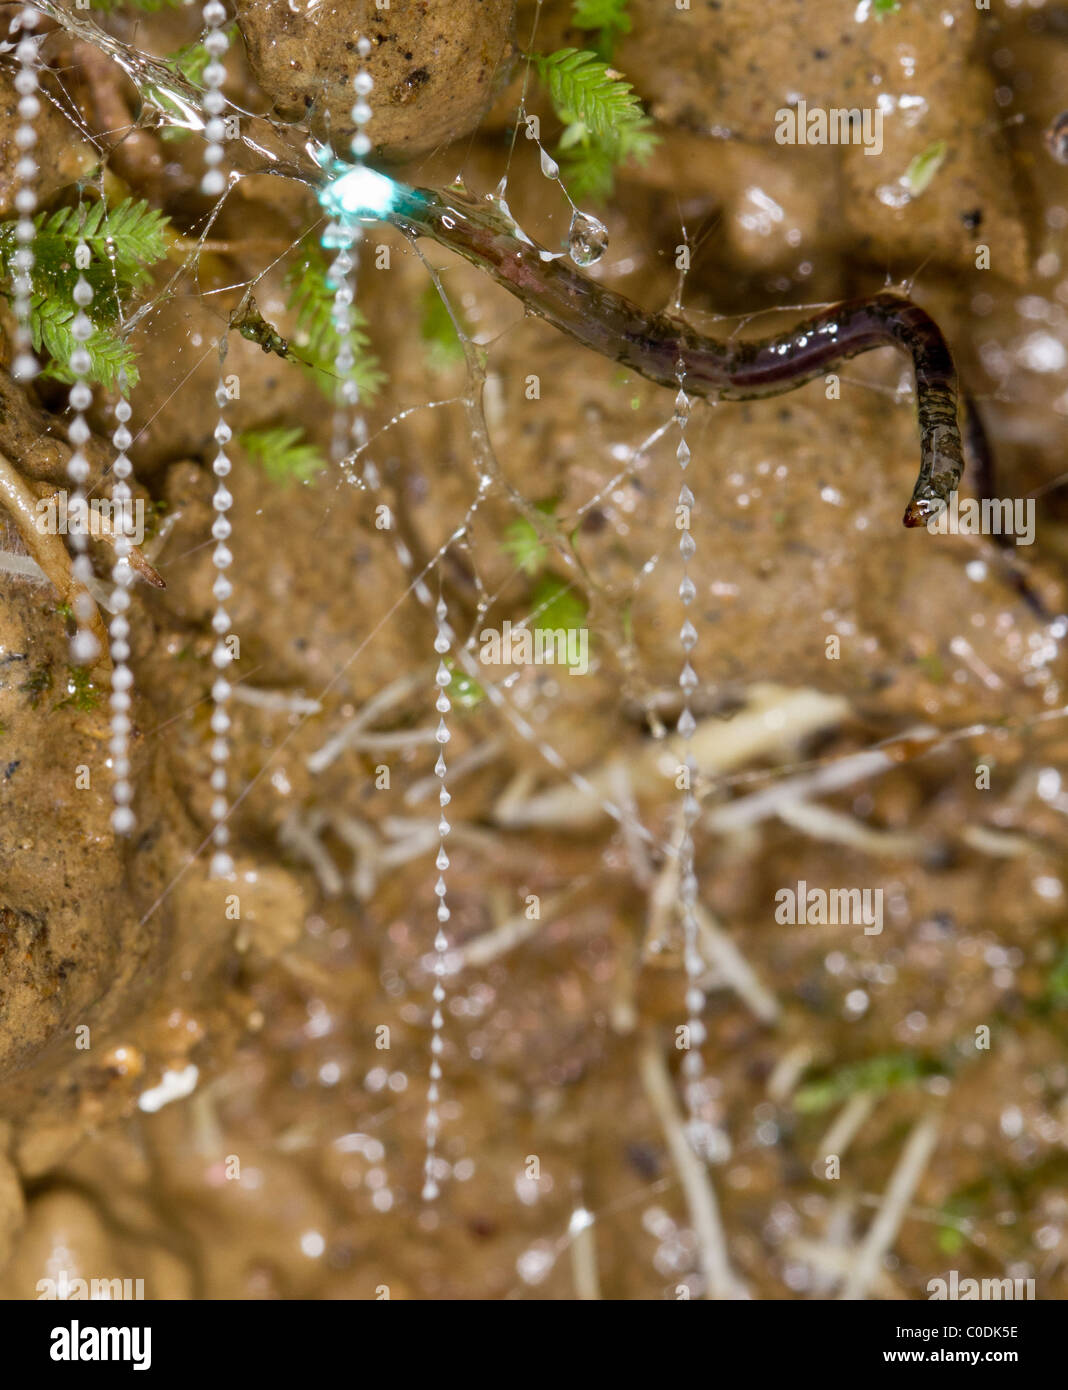 La nouvelle zelande ver luisant (Arachnocampa luminosa), larves de la luminescence, terreaux de caisse claire avec ses fils de soie collante. Banque D'Images